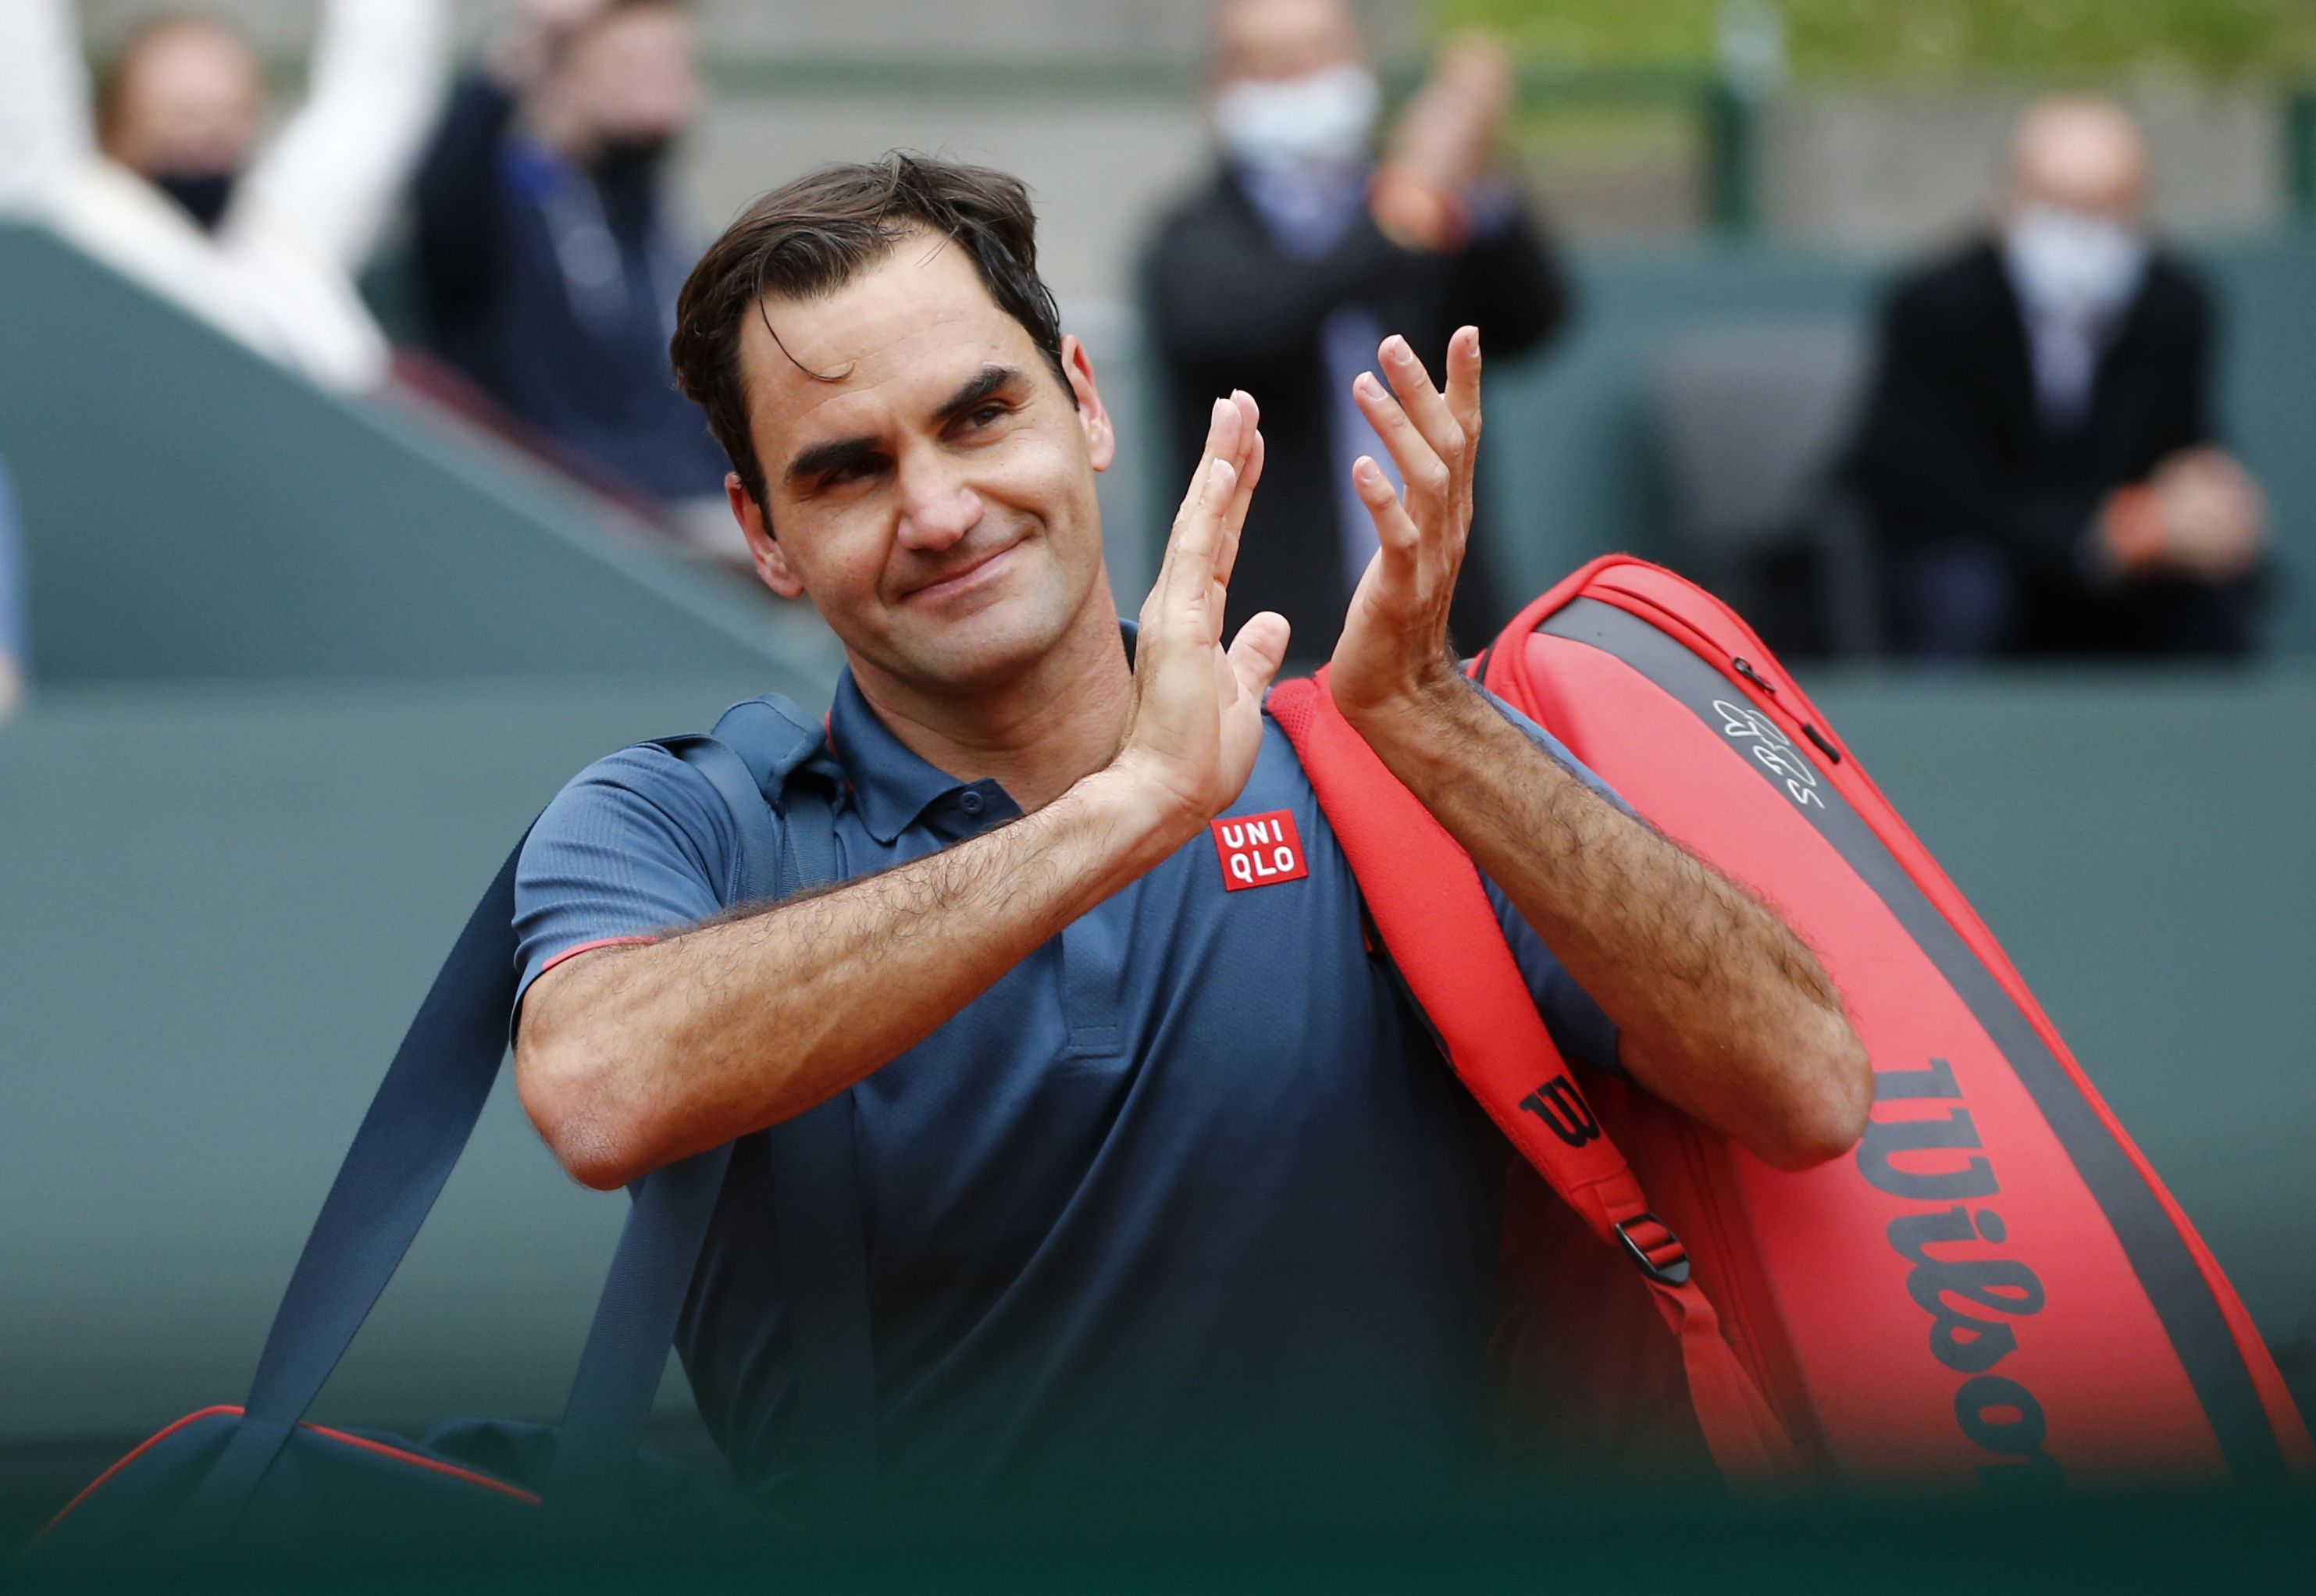 Federer explicó que recién cuando ganó su tercer Wimbledon, comenzó a ser reconocido a nivel mundial (Foto: REUTERS)